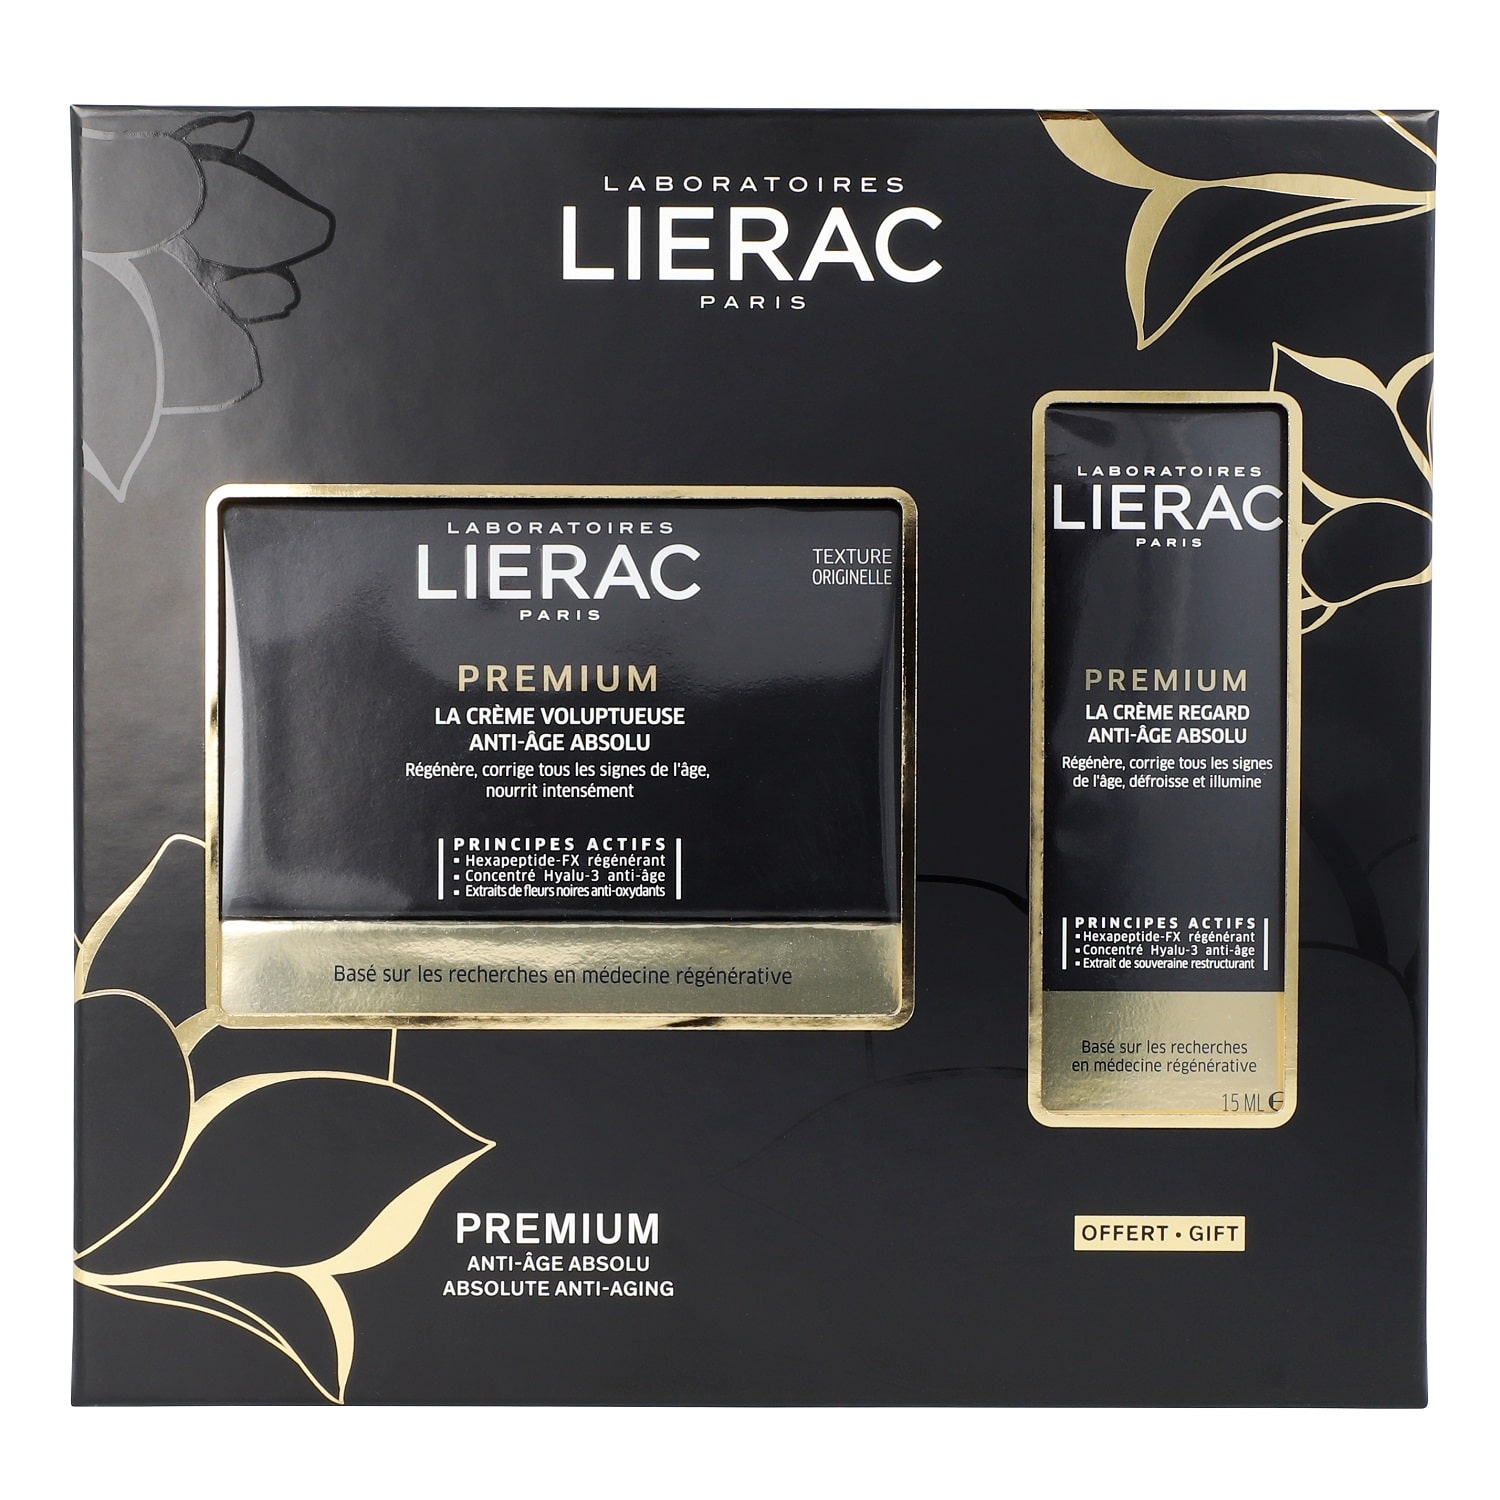 Купить Lierac Набор Премиум (крем анти-аж абсолю, 50 мл + крем для контура глаз анти-аж абсолю 15 мл) (Lierac, Premium), Франция